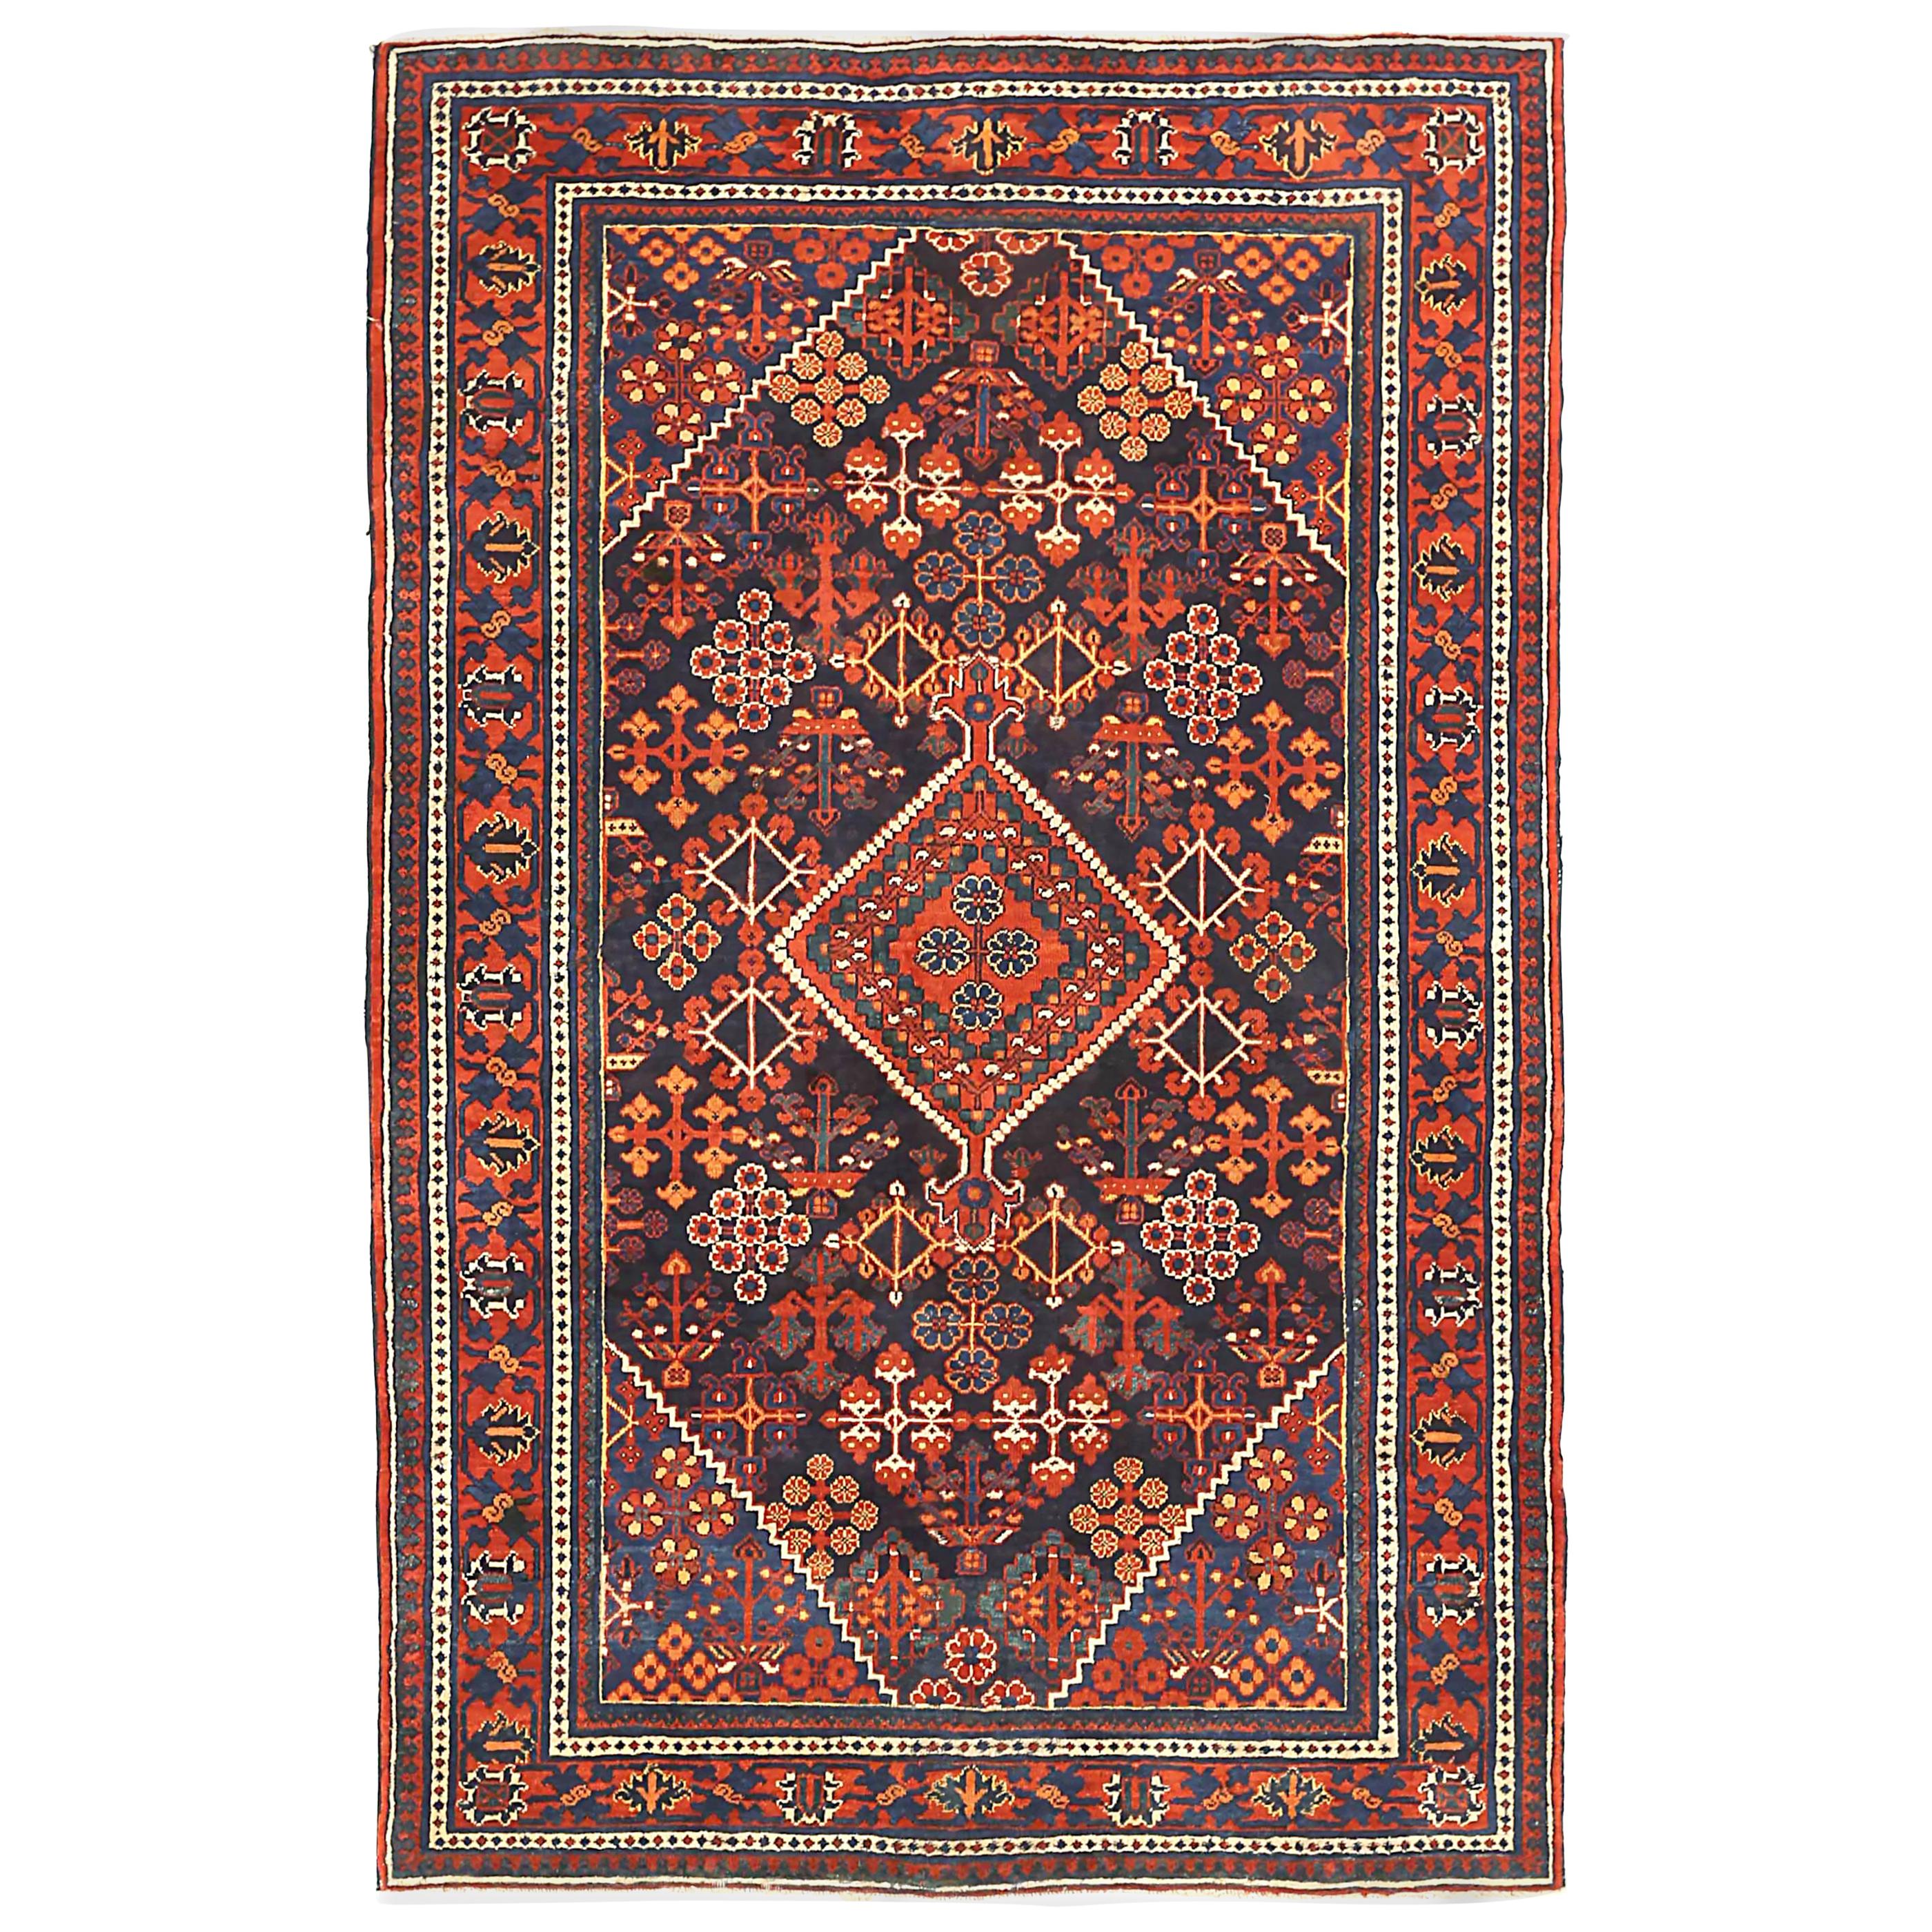 Antique Persian Area Rug Joshegan Design For Sale